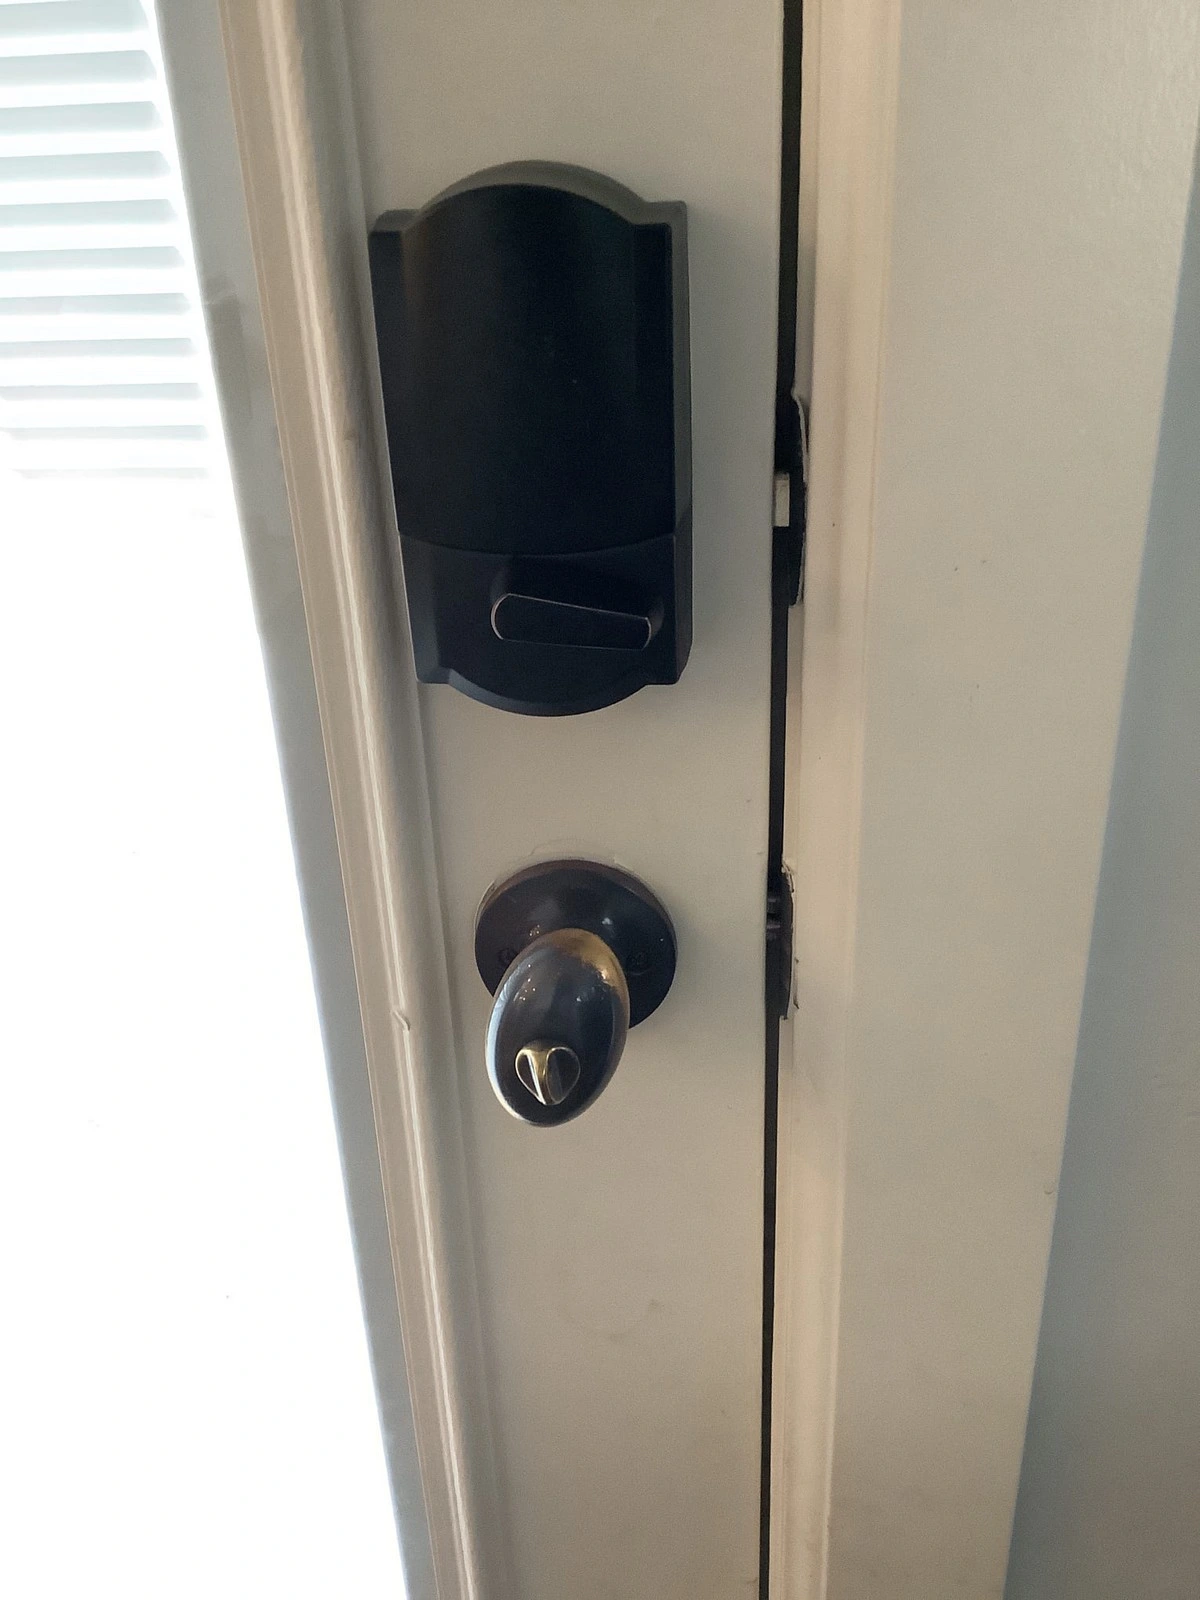 Freshly repaired Lehi door handle by Mr. Handyman